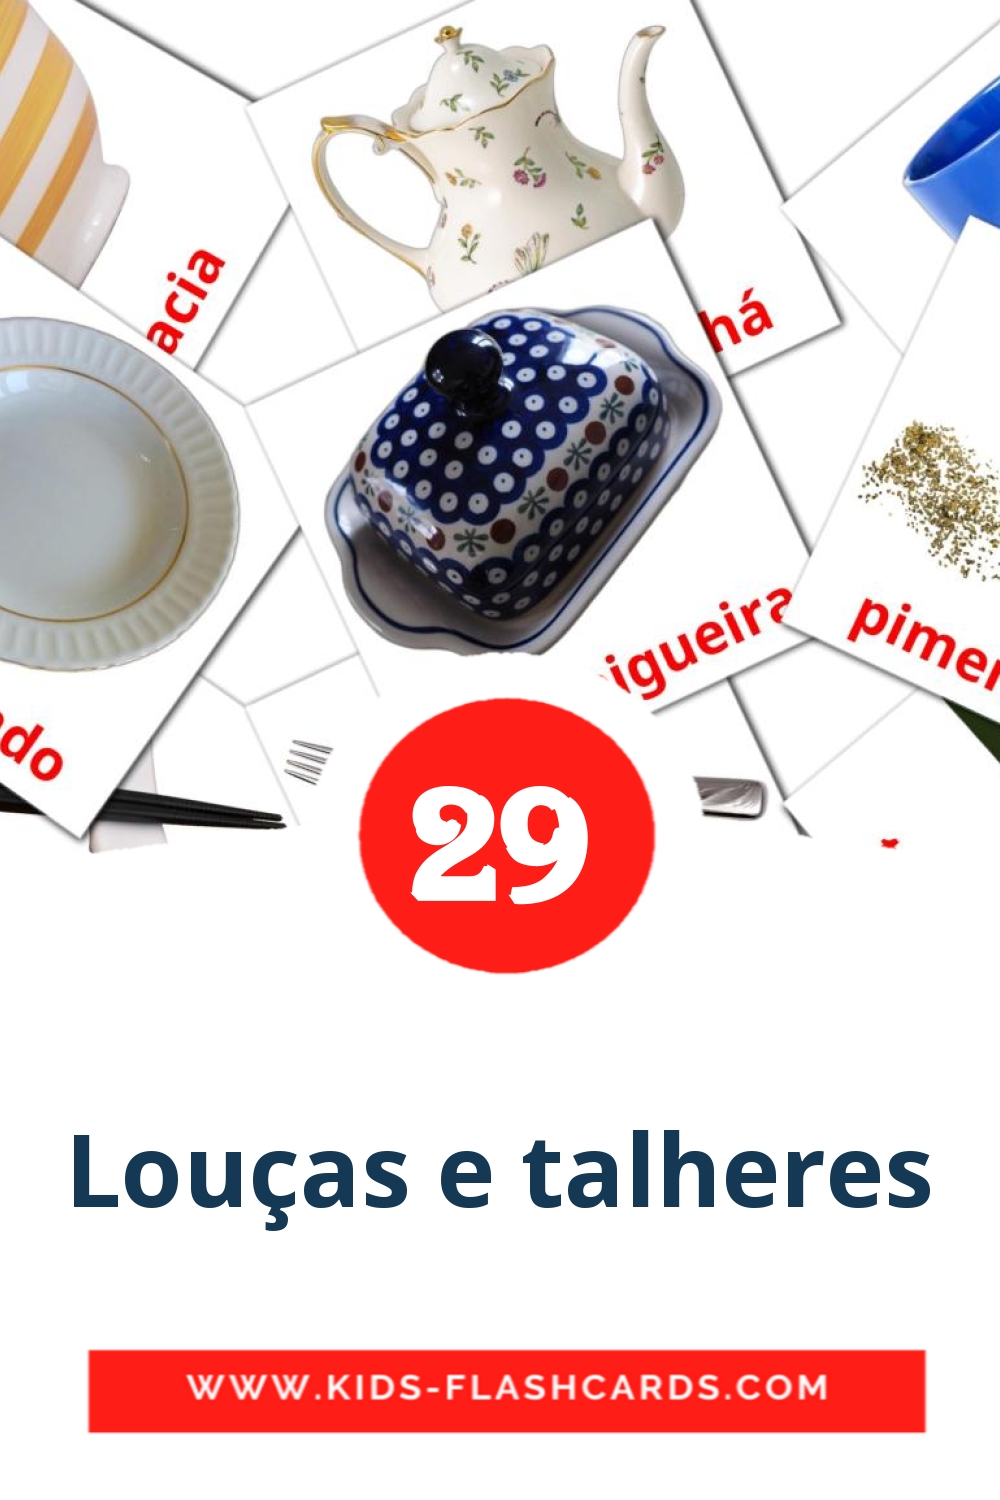 Louças e talheres на португальском для Детского Сада (29 карточек)